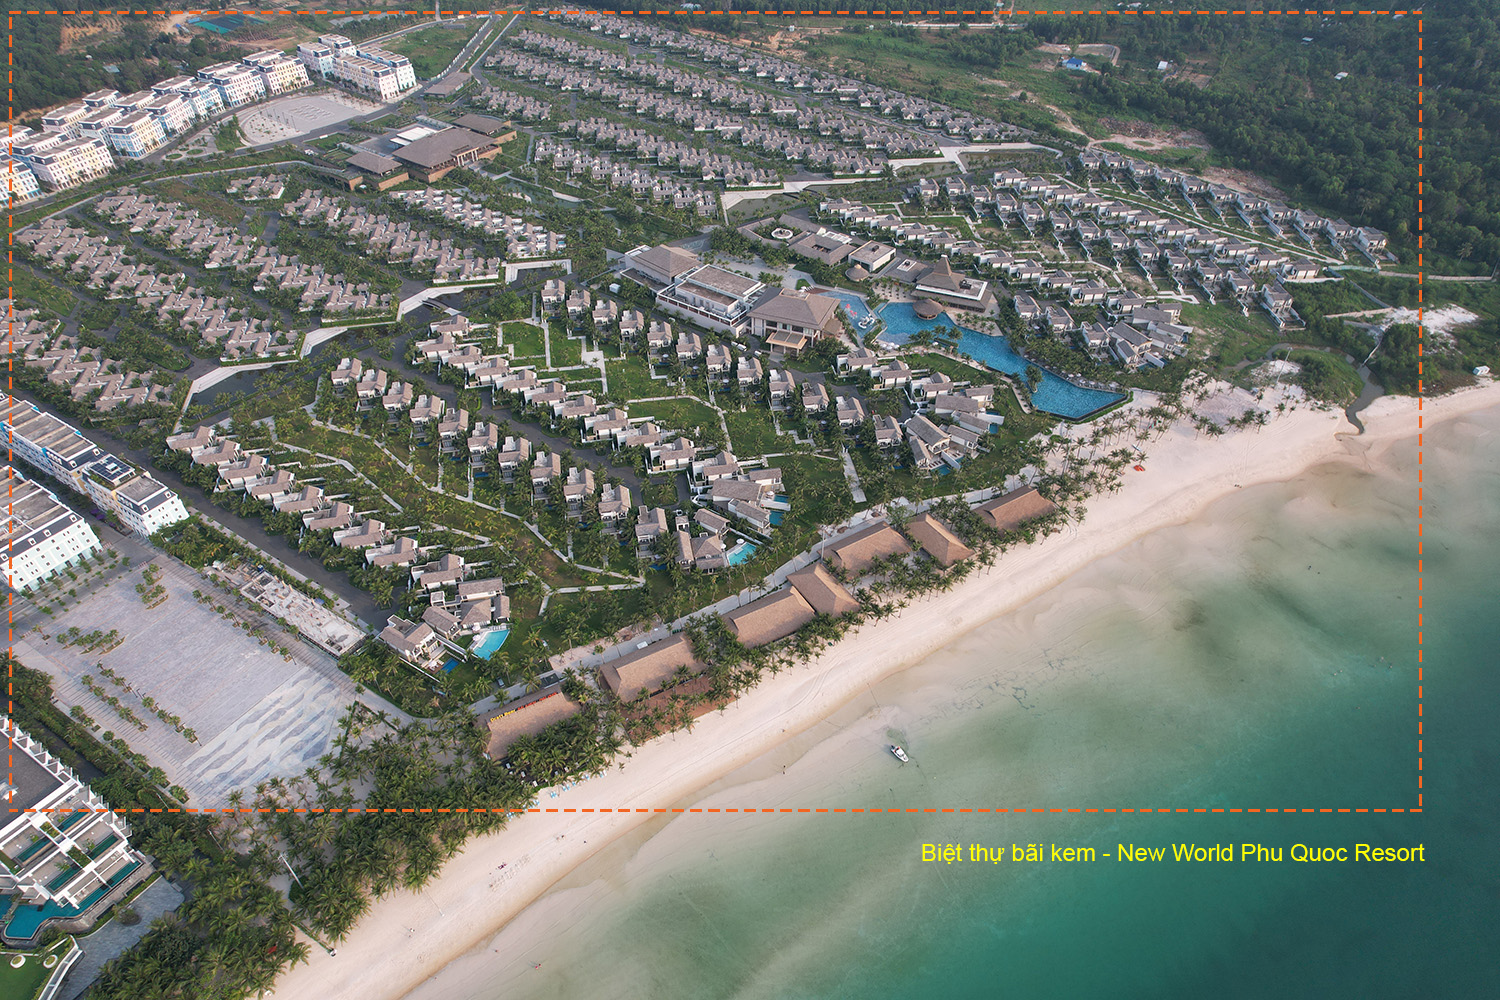 Dự án biệt thự bãi kem - New World Phu Quoc Resort